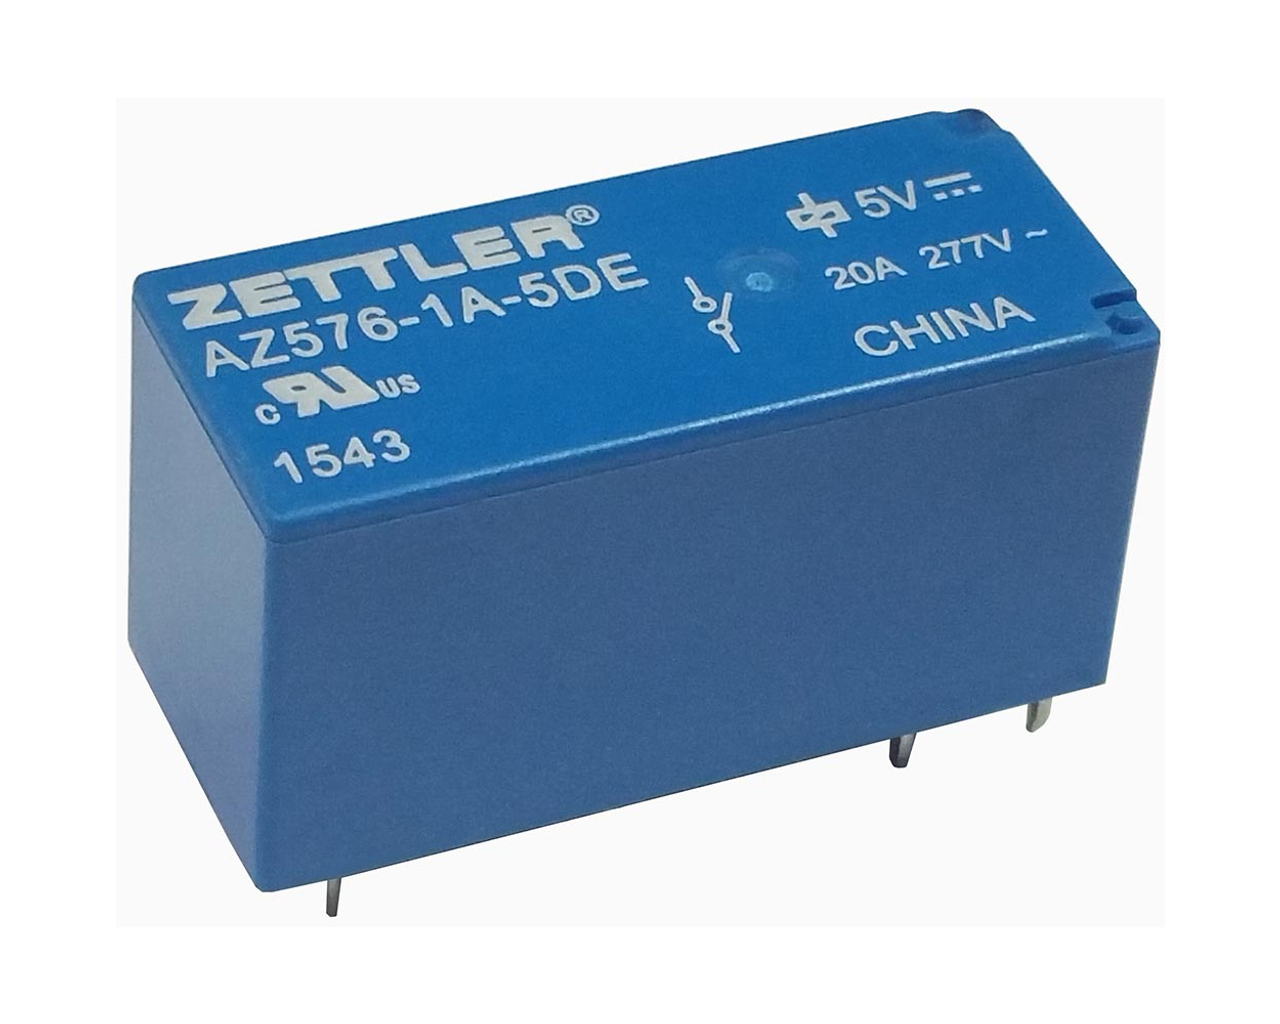 American Zettler AZ576-1A-24D Power Relay